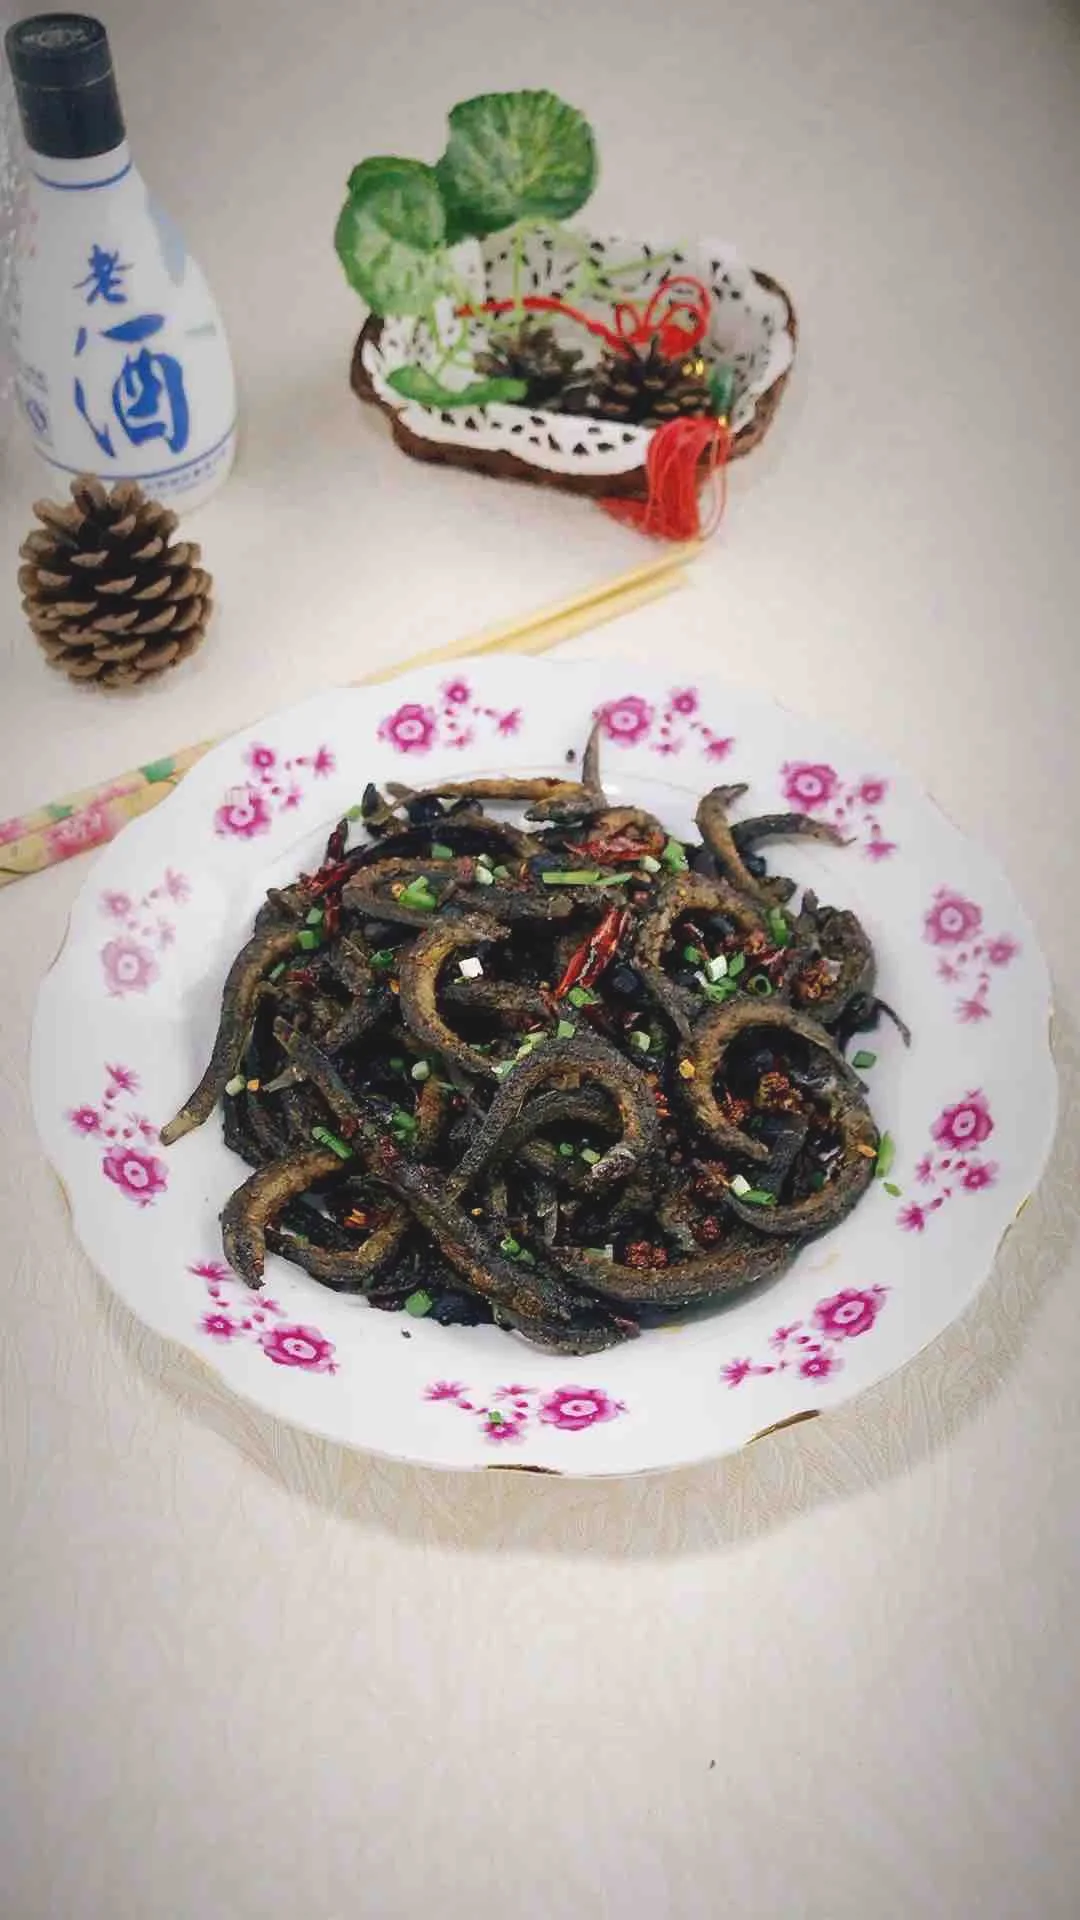 豆豉干煸泥鳅的做法-麻辣味干煸菜谱